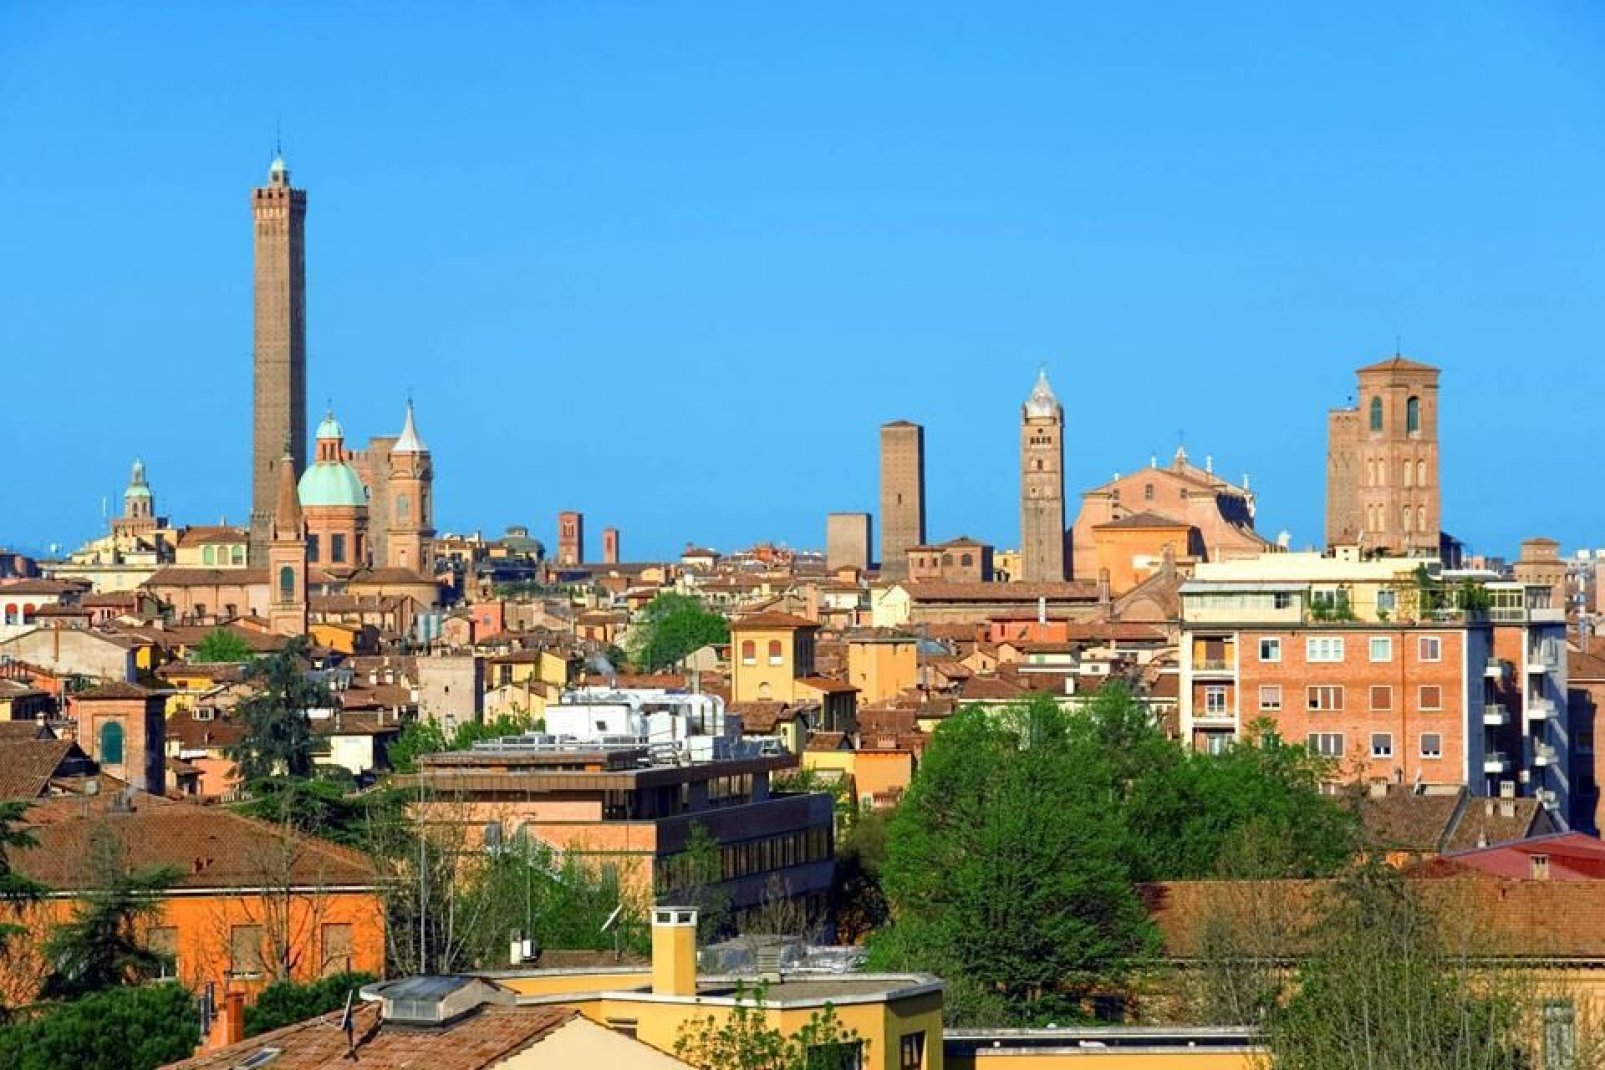 Bologna ospita una delle più antiche università d'Europa, ed è un importante centro culturale:"capitale europea della cultura" nel 2000, dal 2006 è "città della musica" UNESCO